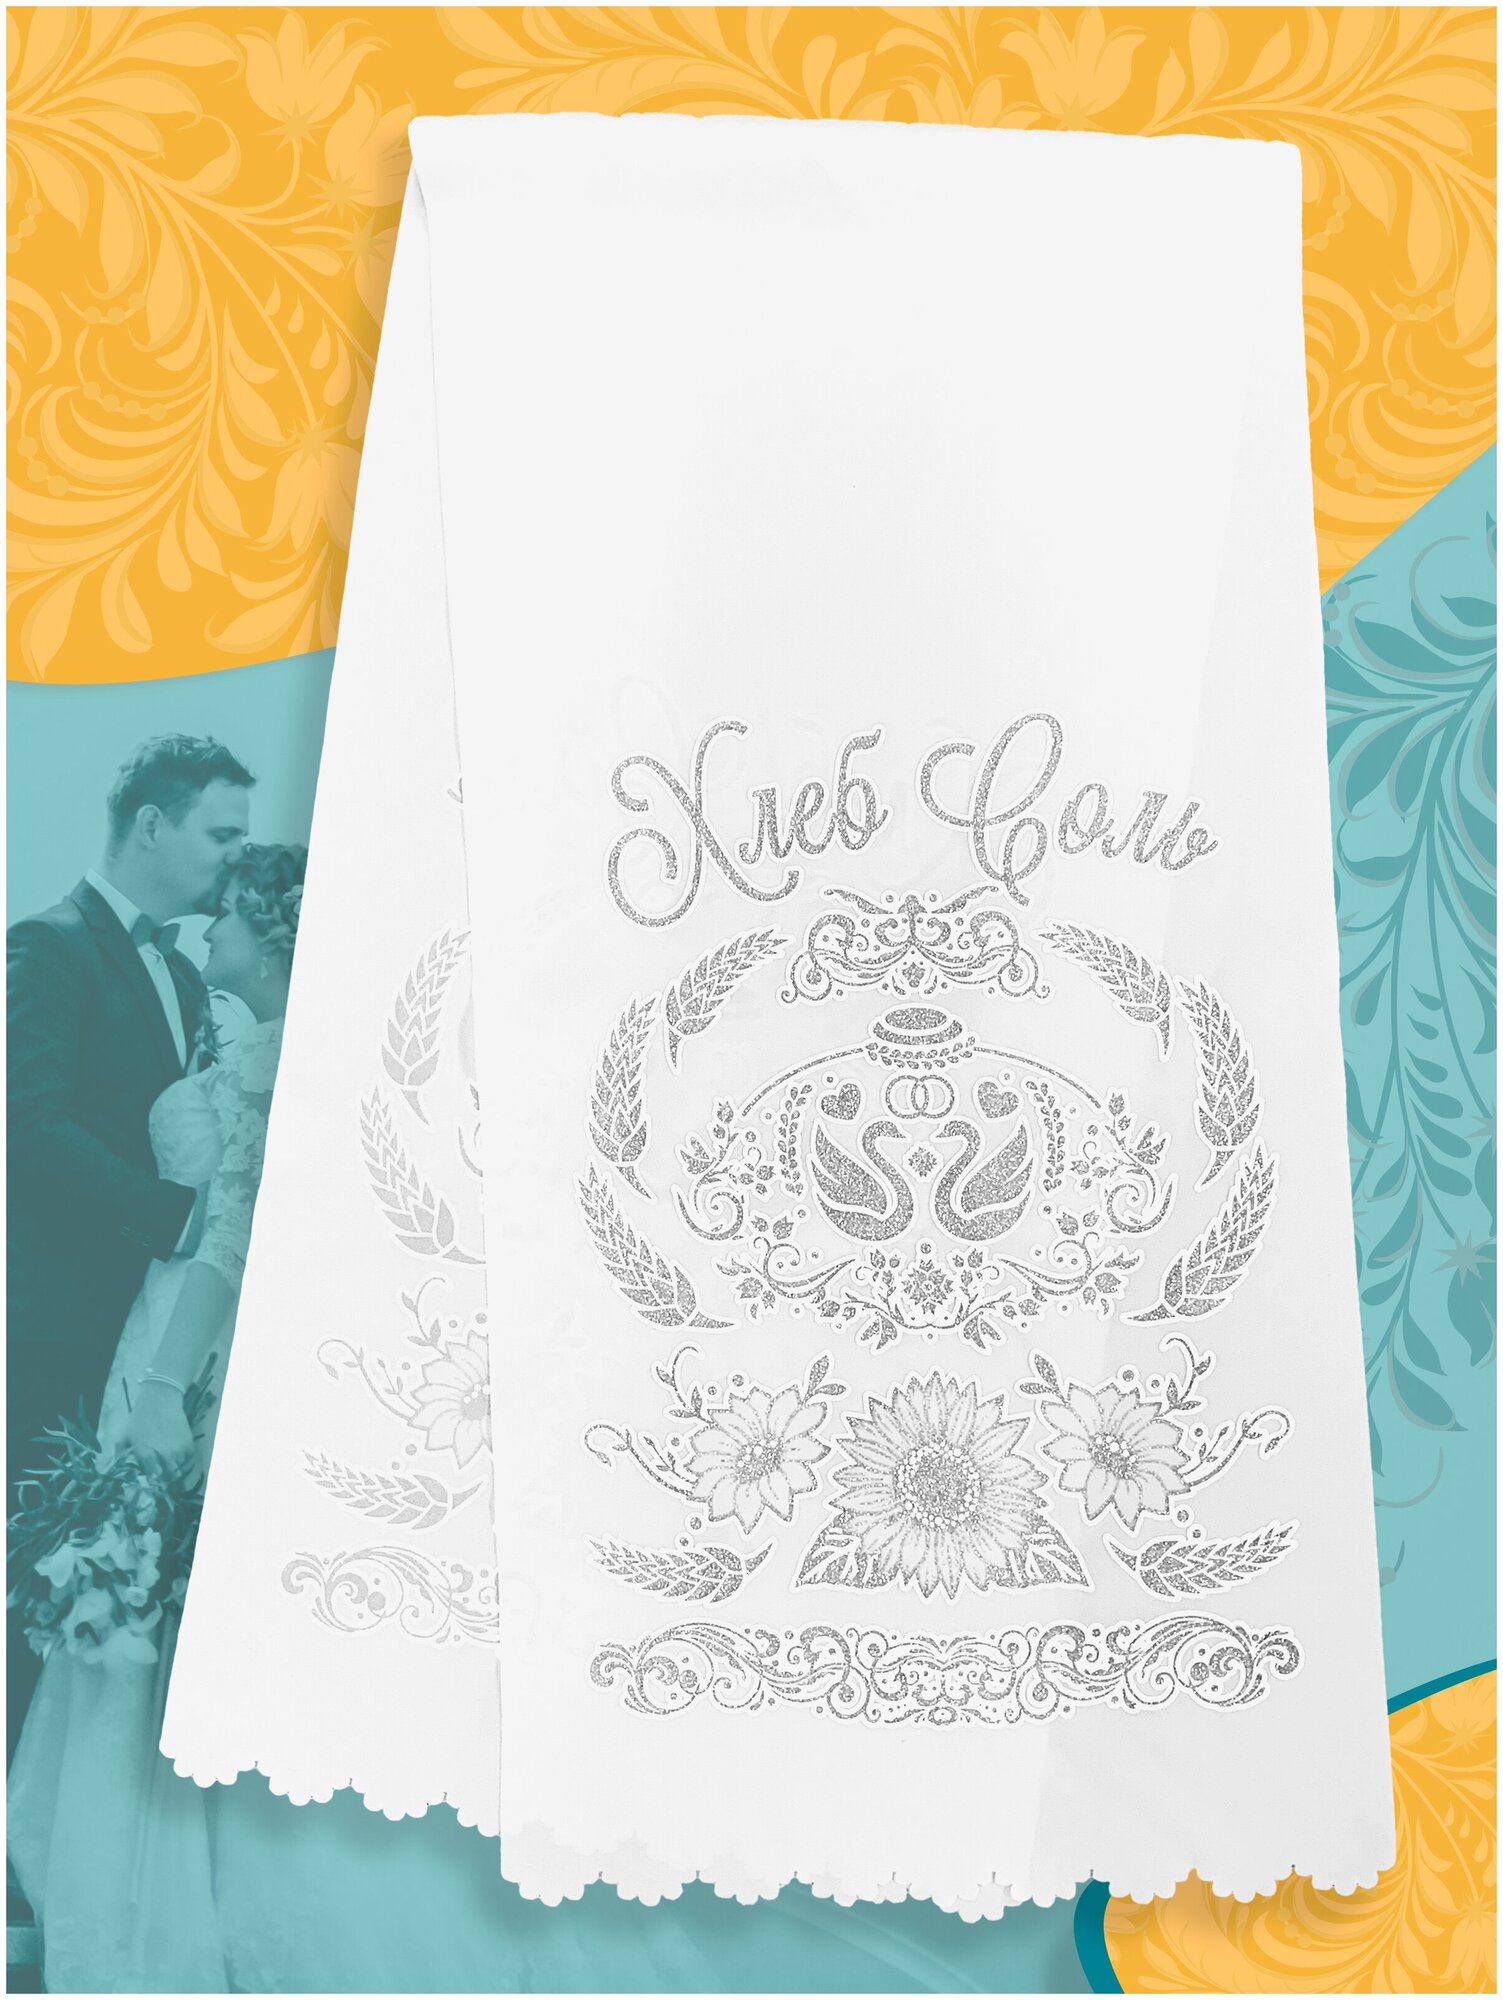 Рушник свадебный "Хлеб да Соль" серебро для каравая иконы венчальный белый / Репост принт